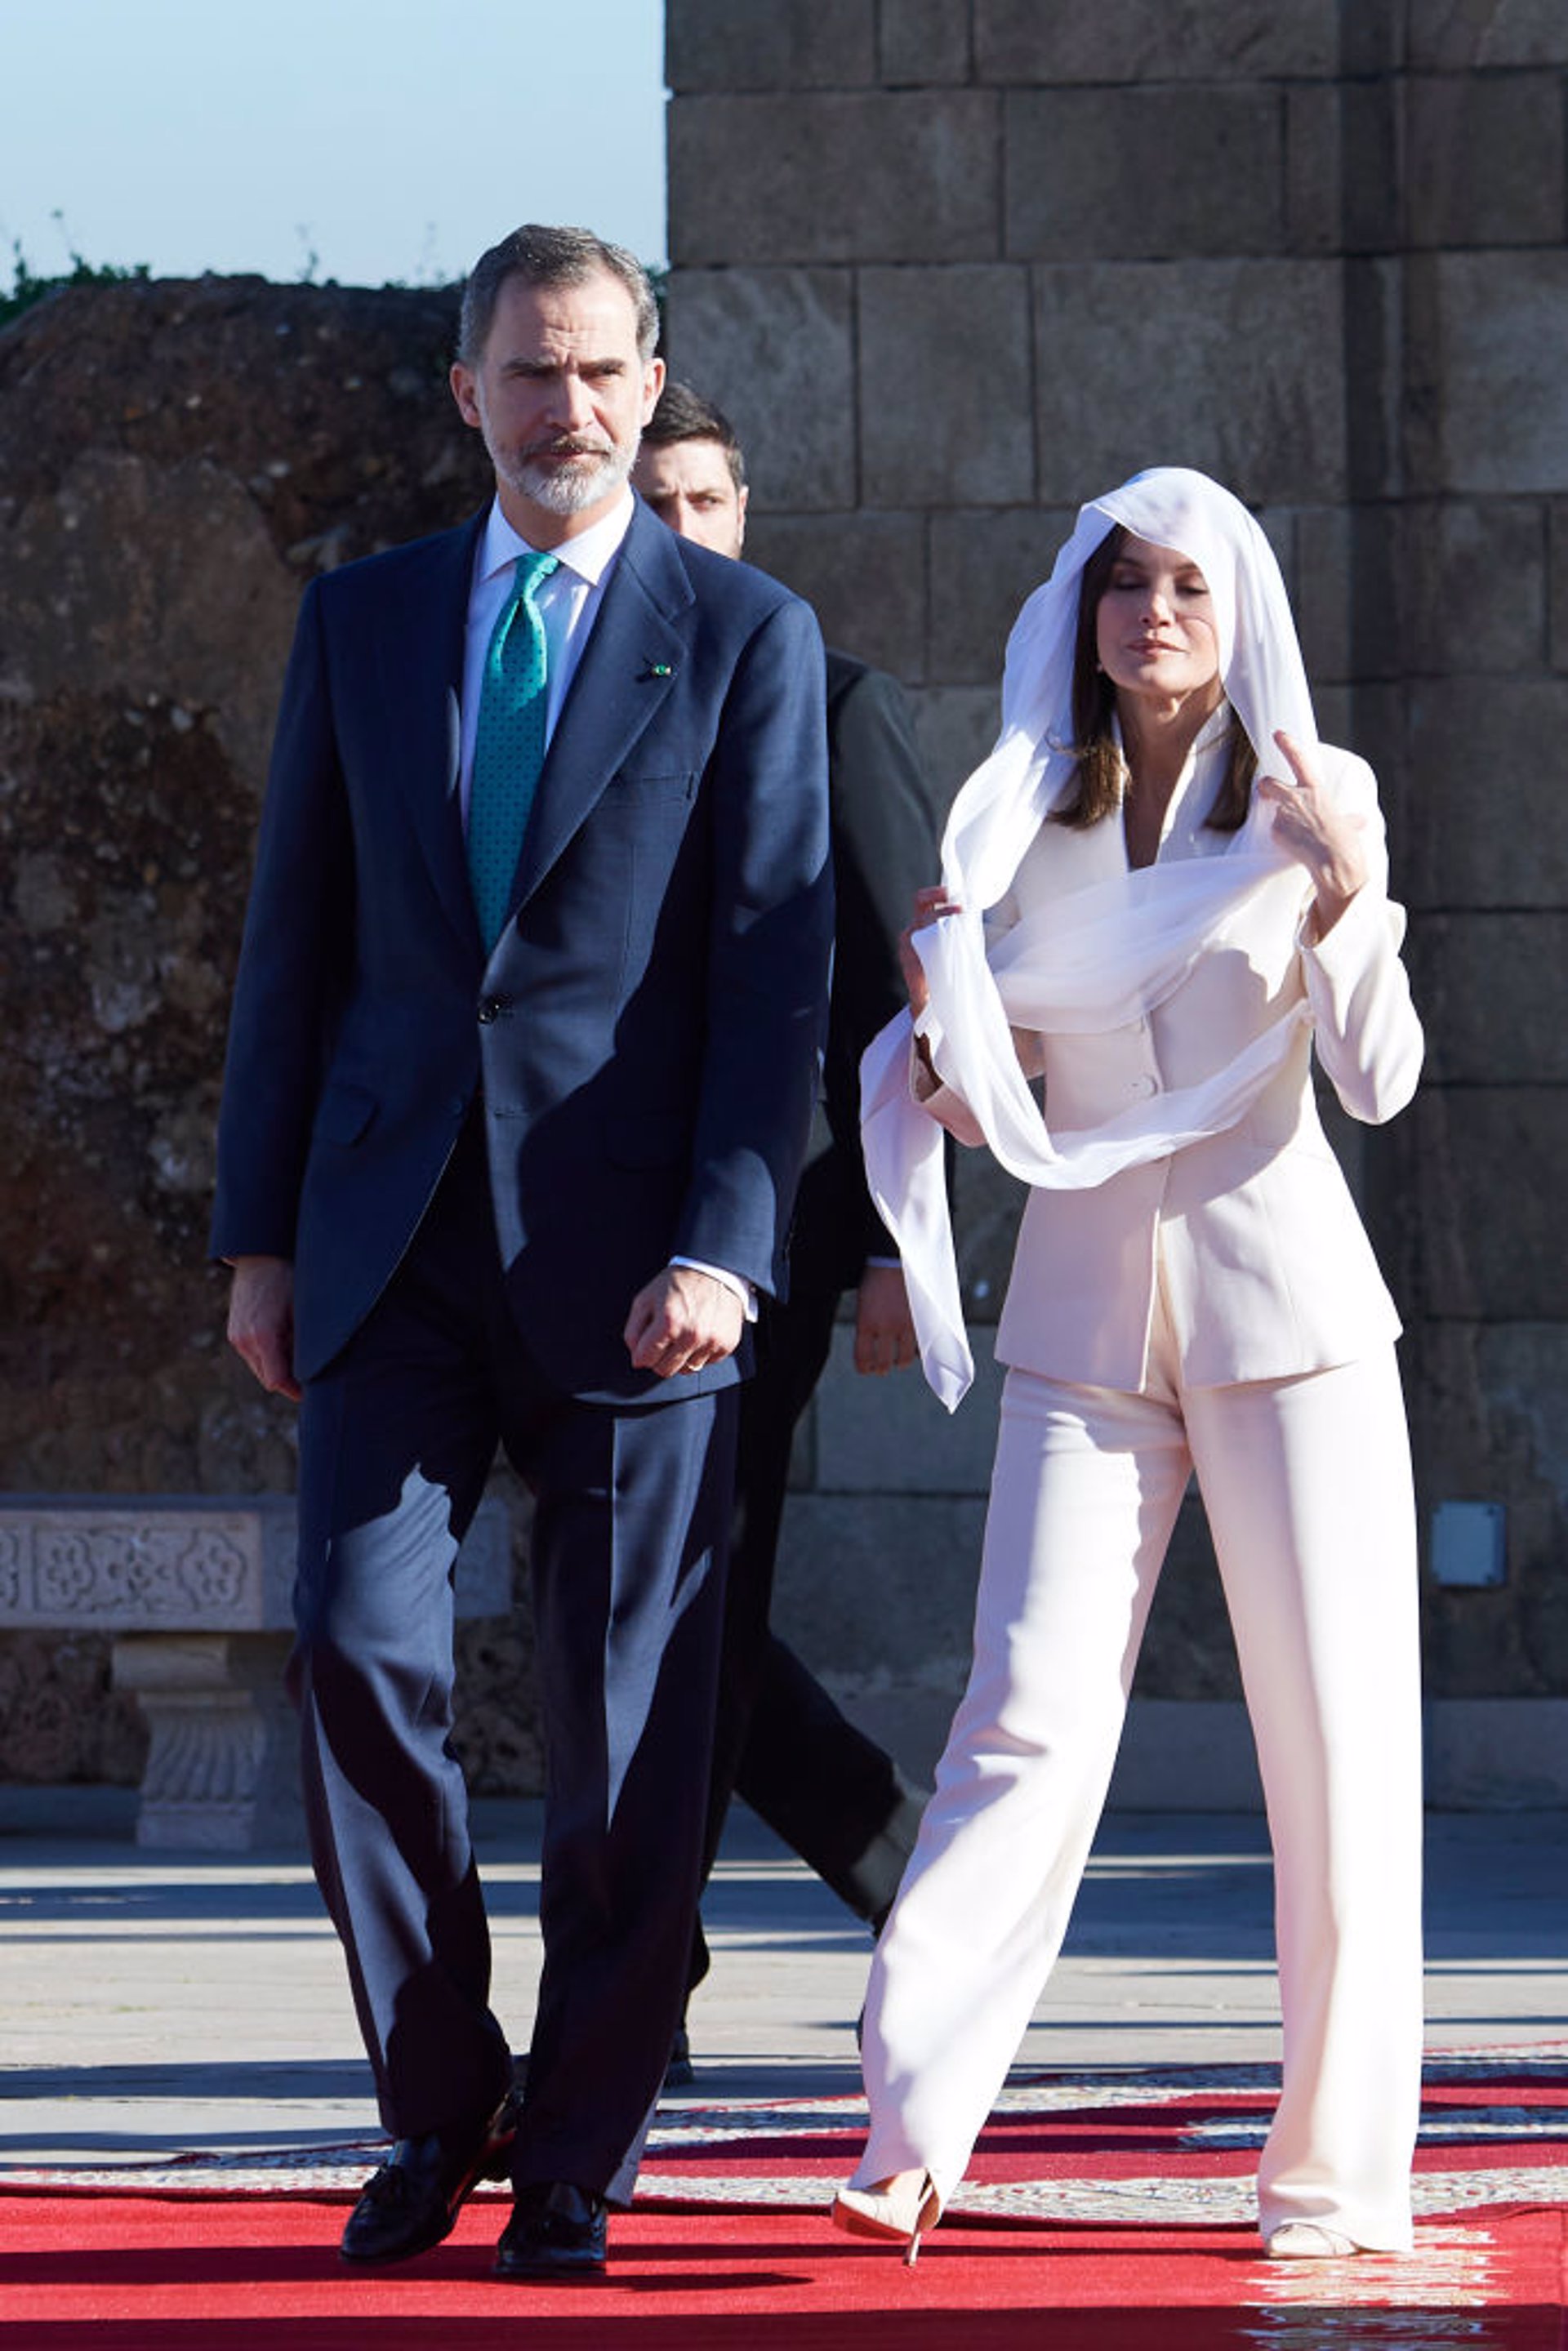 La Reina Letizia, de nuevo de Armani por San Valentín como en Marruecos en 2019. Aquí con velo